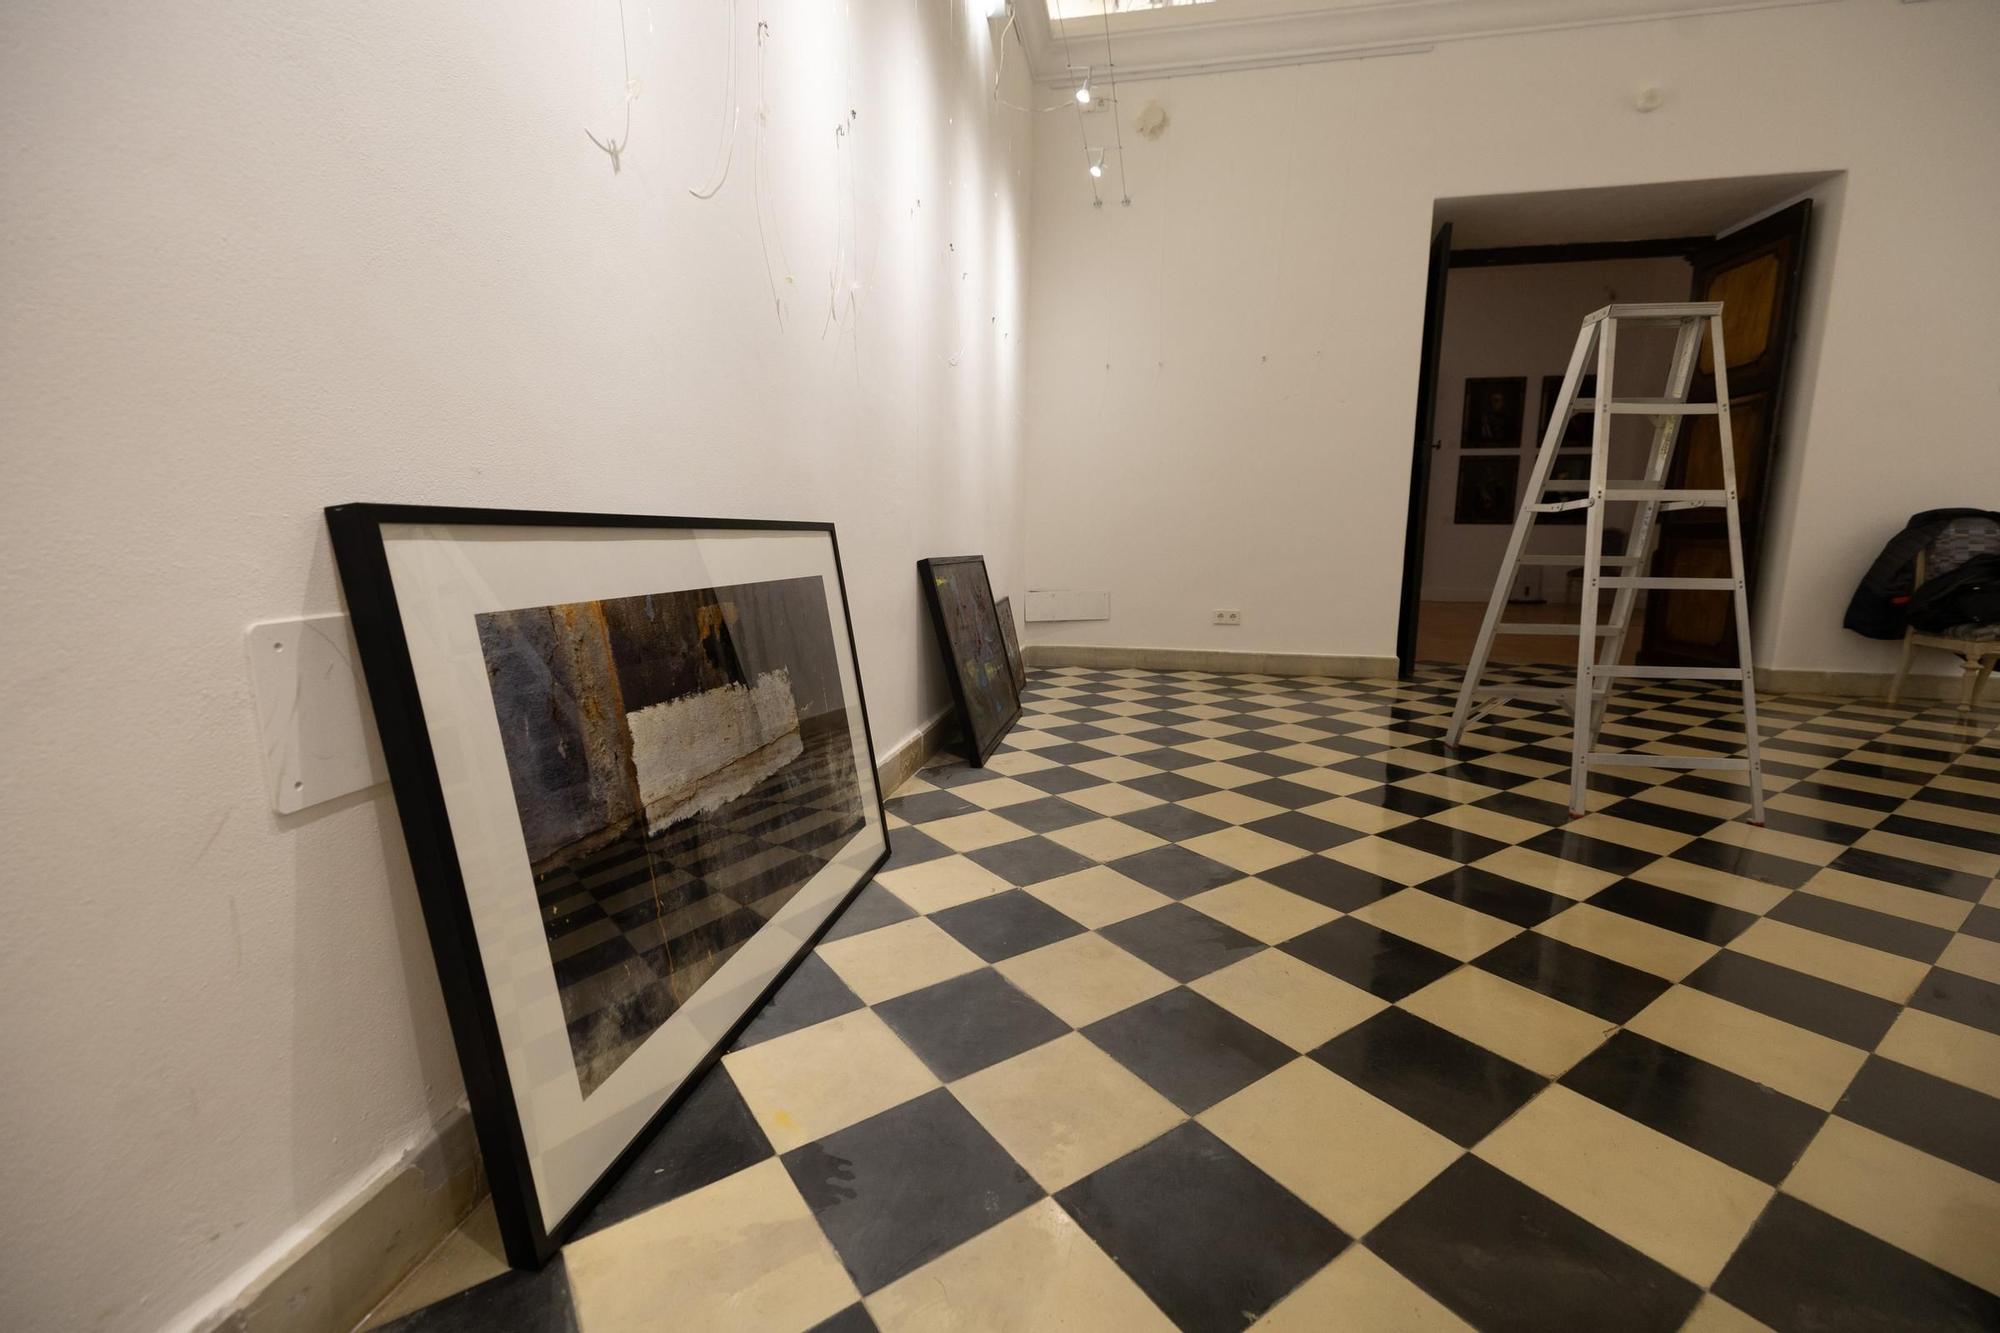 Galería: Un circuito de arte en Dalt Vila con más espacios expositivos